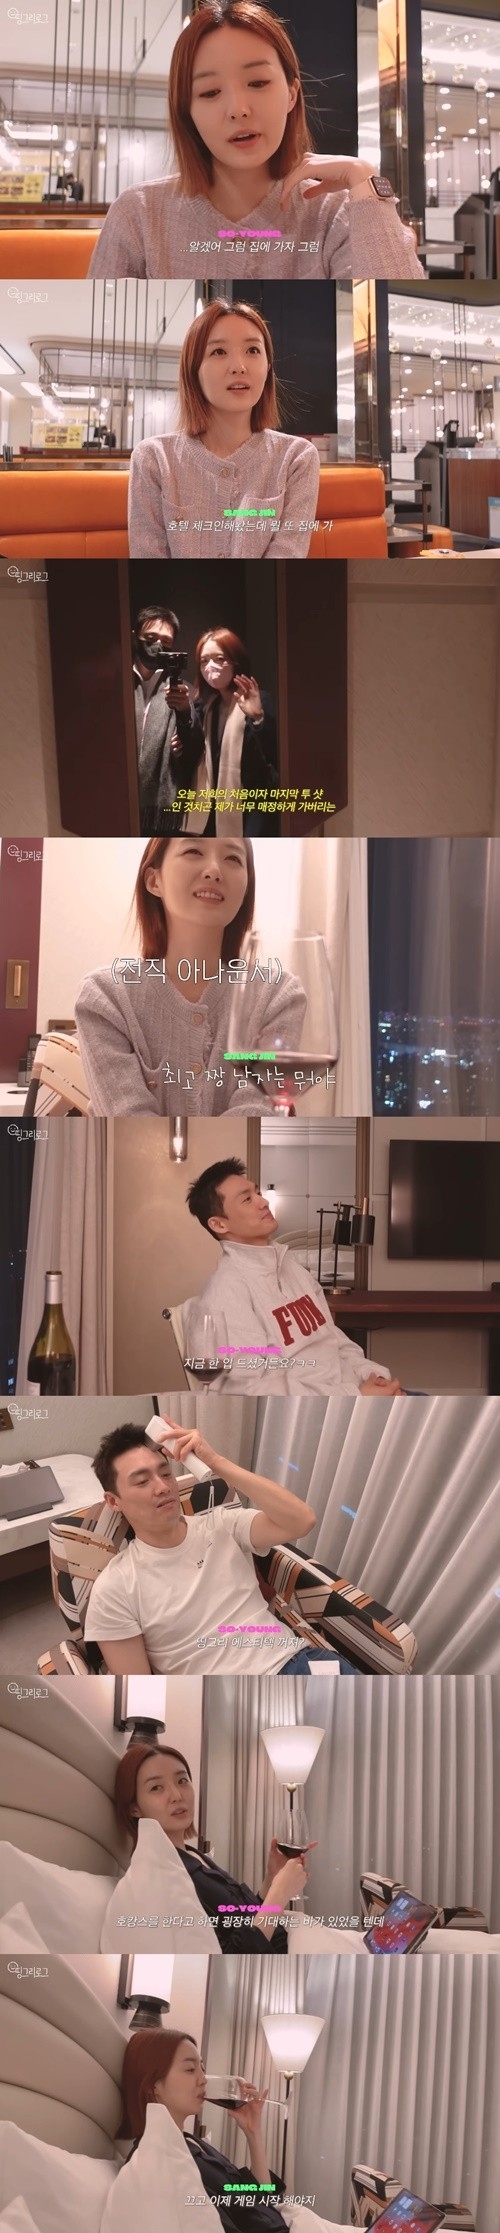 방송인 김소영 오상진 부부가 호캉스를 즐기면서도 티격태격했다. 유튜브 캡처